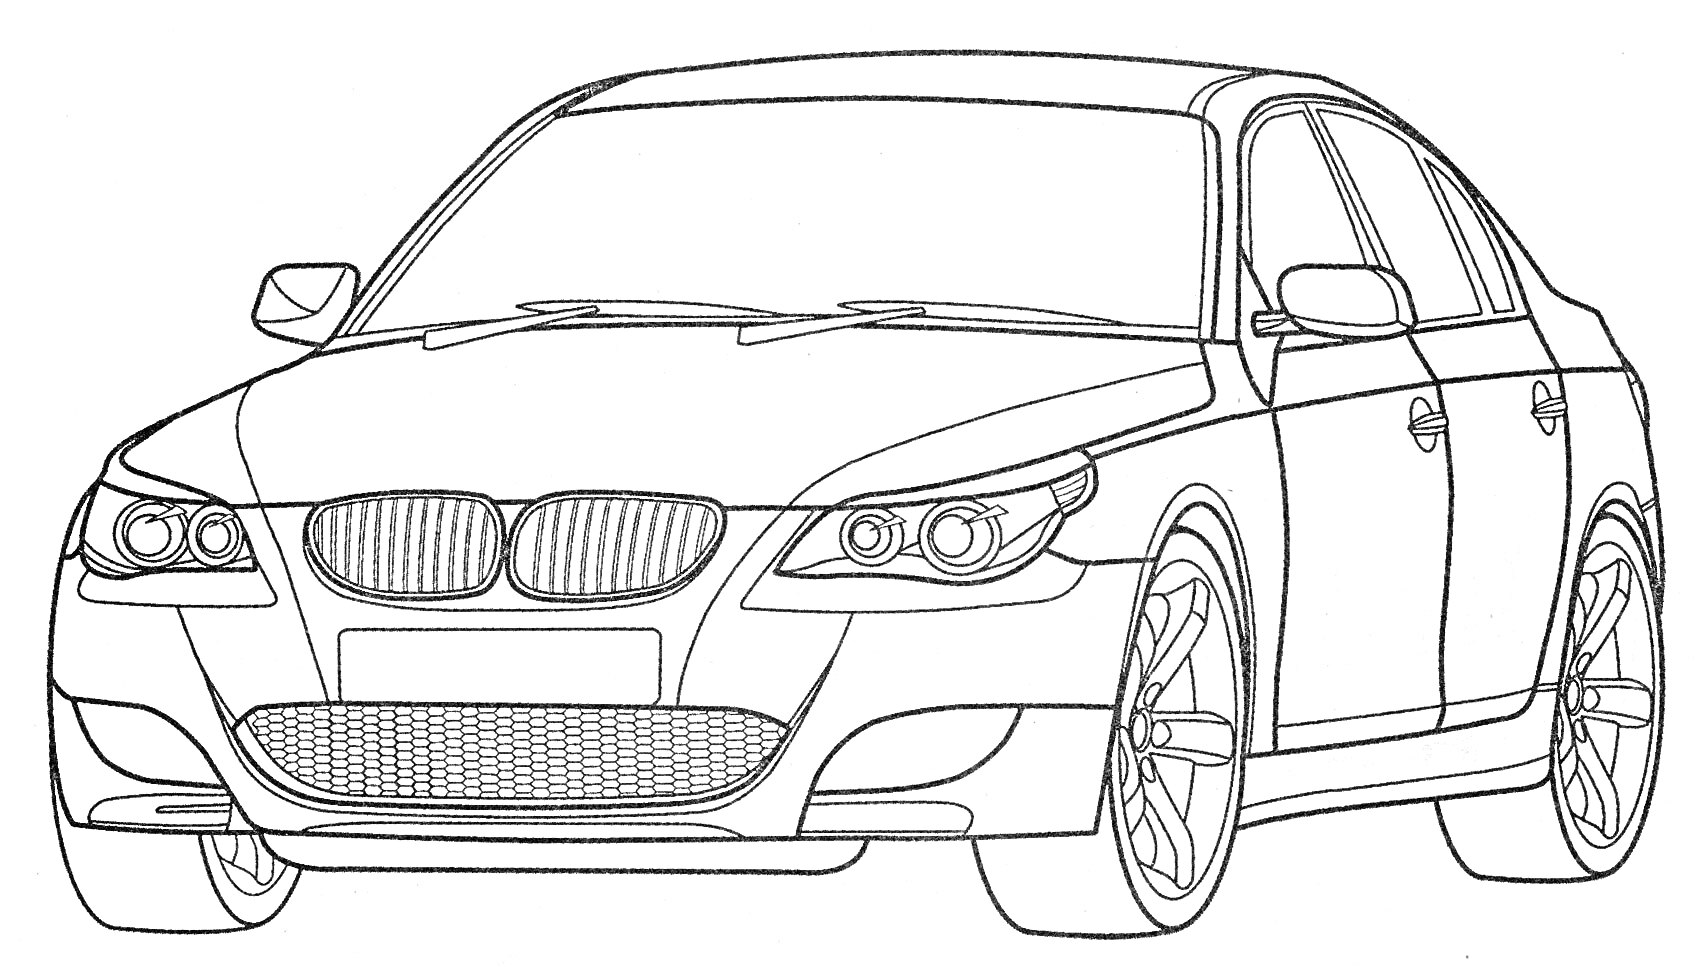 Линия раскраски автомобиля BMW с передним обзором, фарами, капотом, боковыми зеркалами, дверями, колесами и радиаторной решеткой.